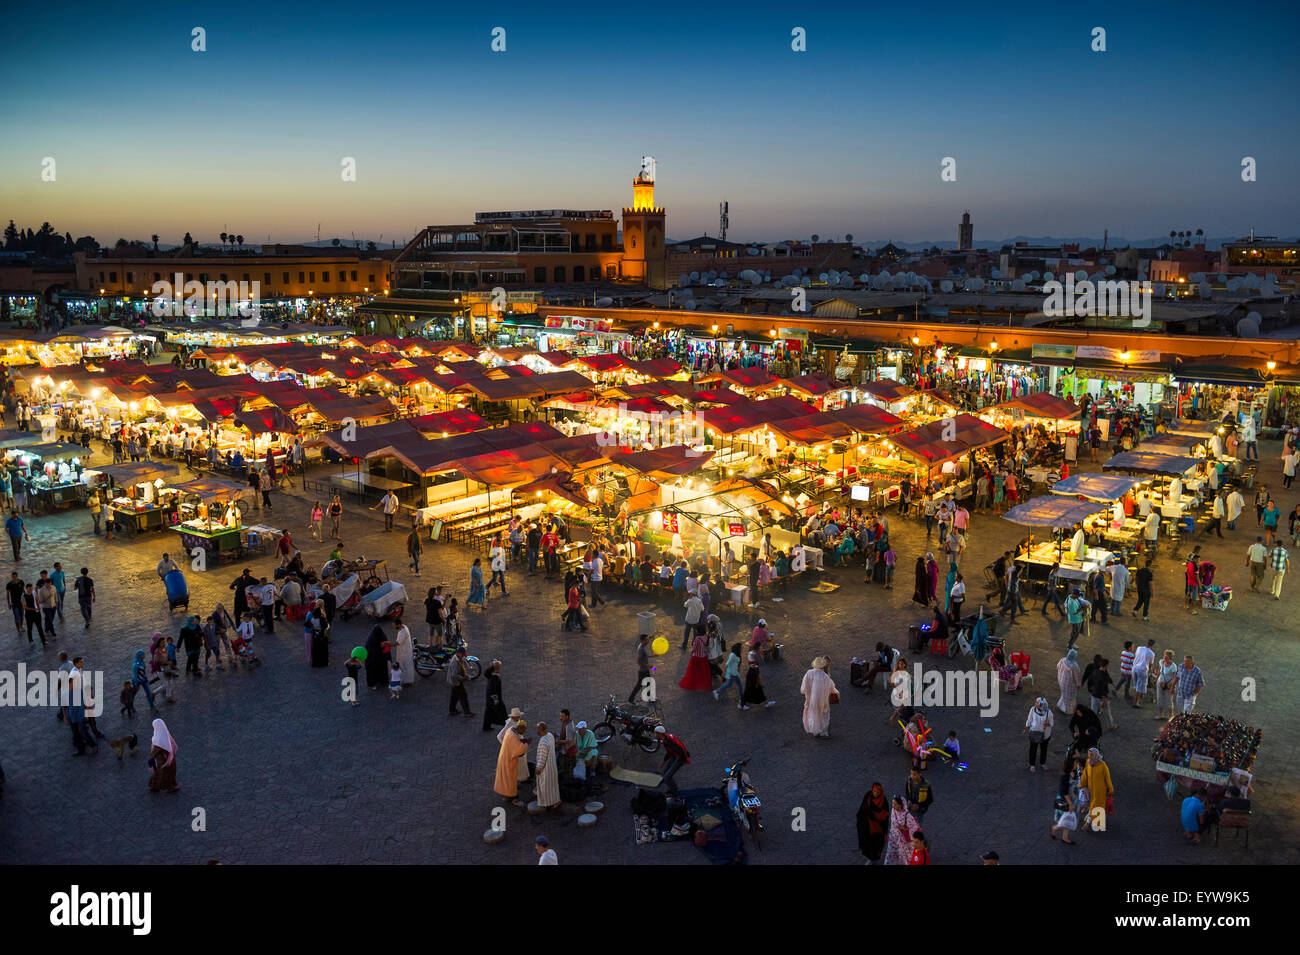 Viele Menschen auf dem Platz Djemaa el Fna, UNESCO World Heritage Site, am Abend, Marrakesch, Marokko Stockfoto